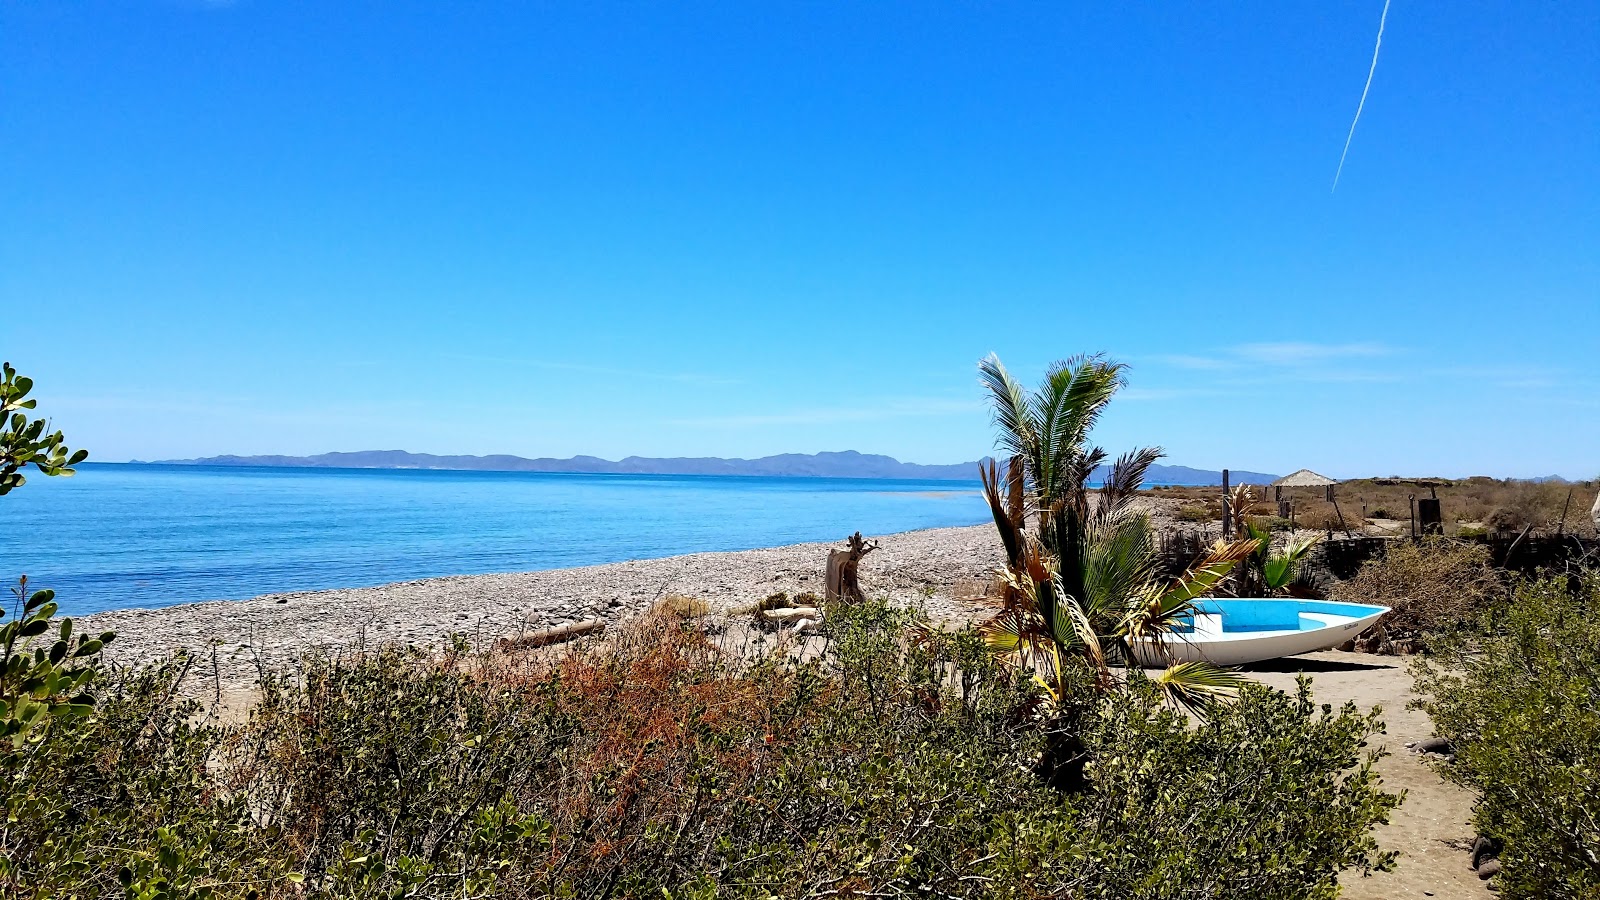 Playa La Picazon'in fotoğrafı geniş plaj ile birlikte